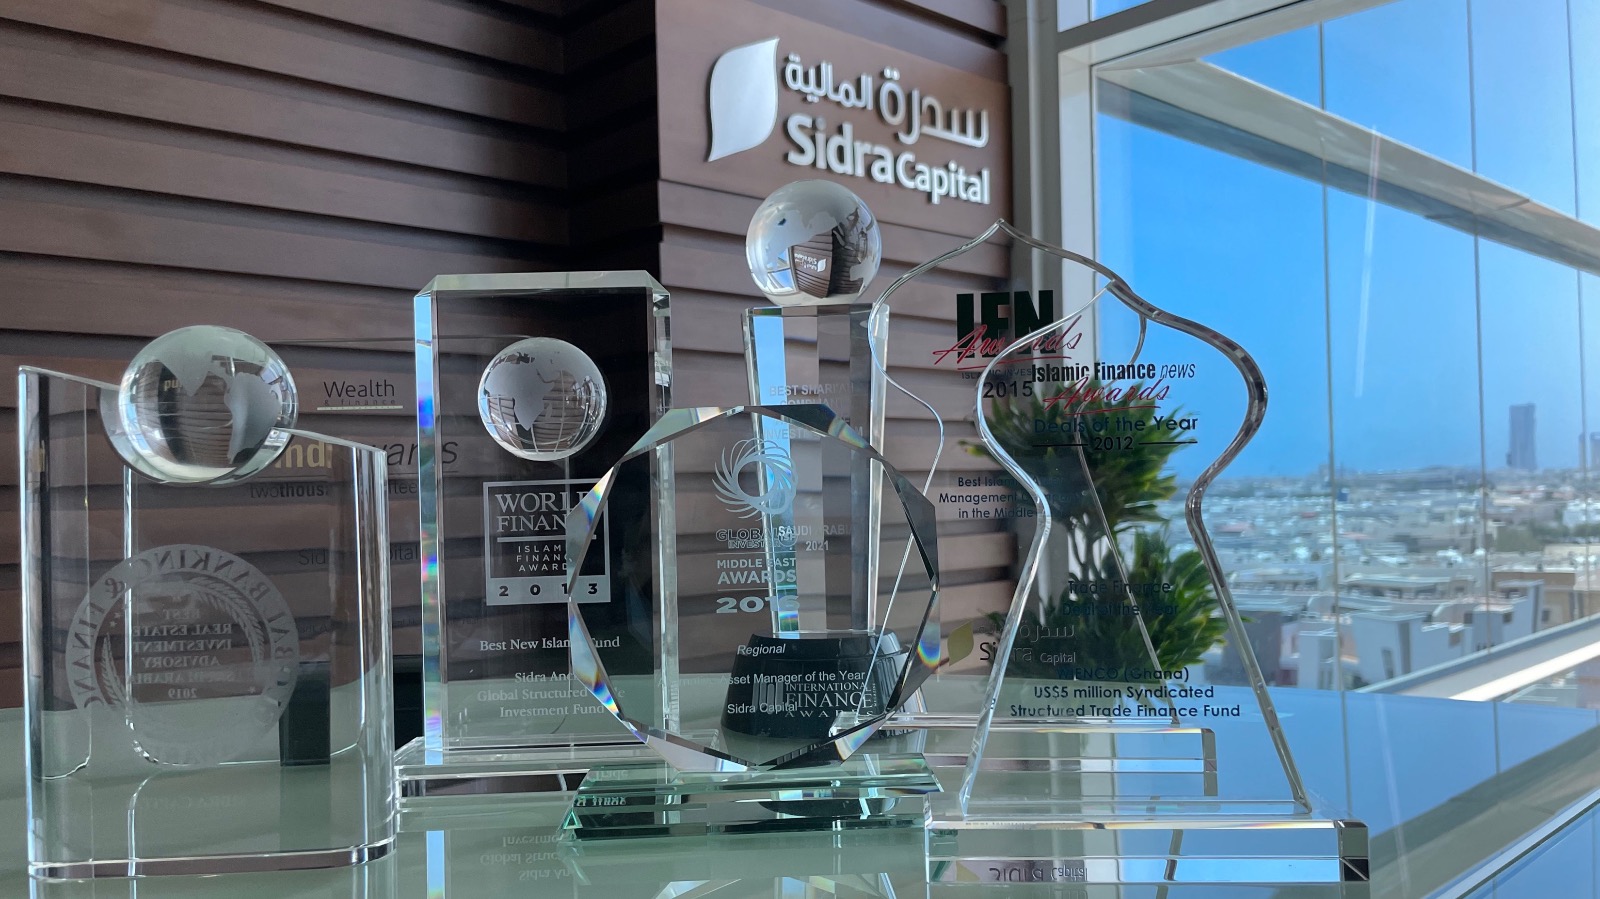 Sidra Awards and Accolades